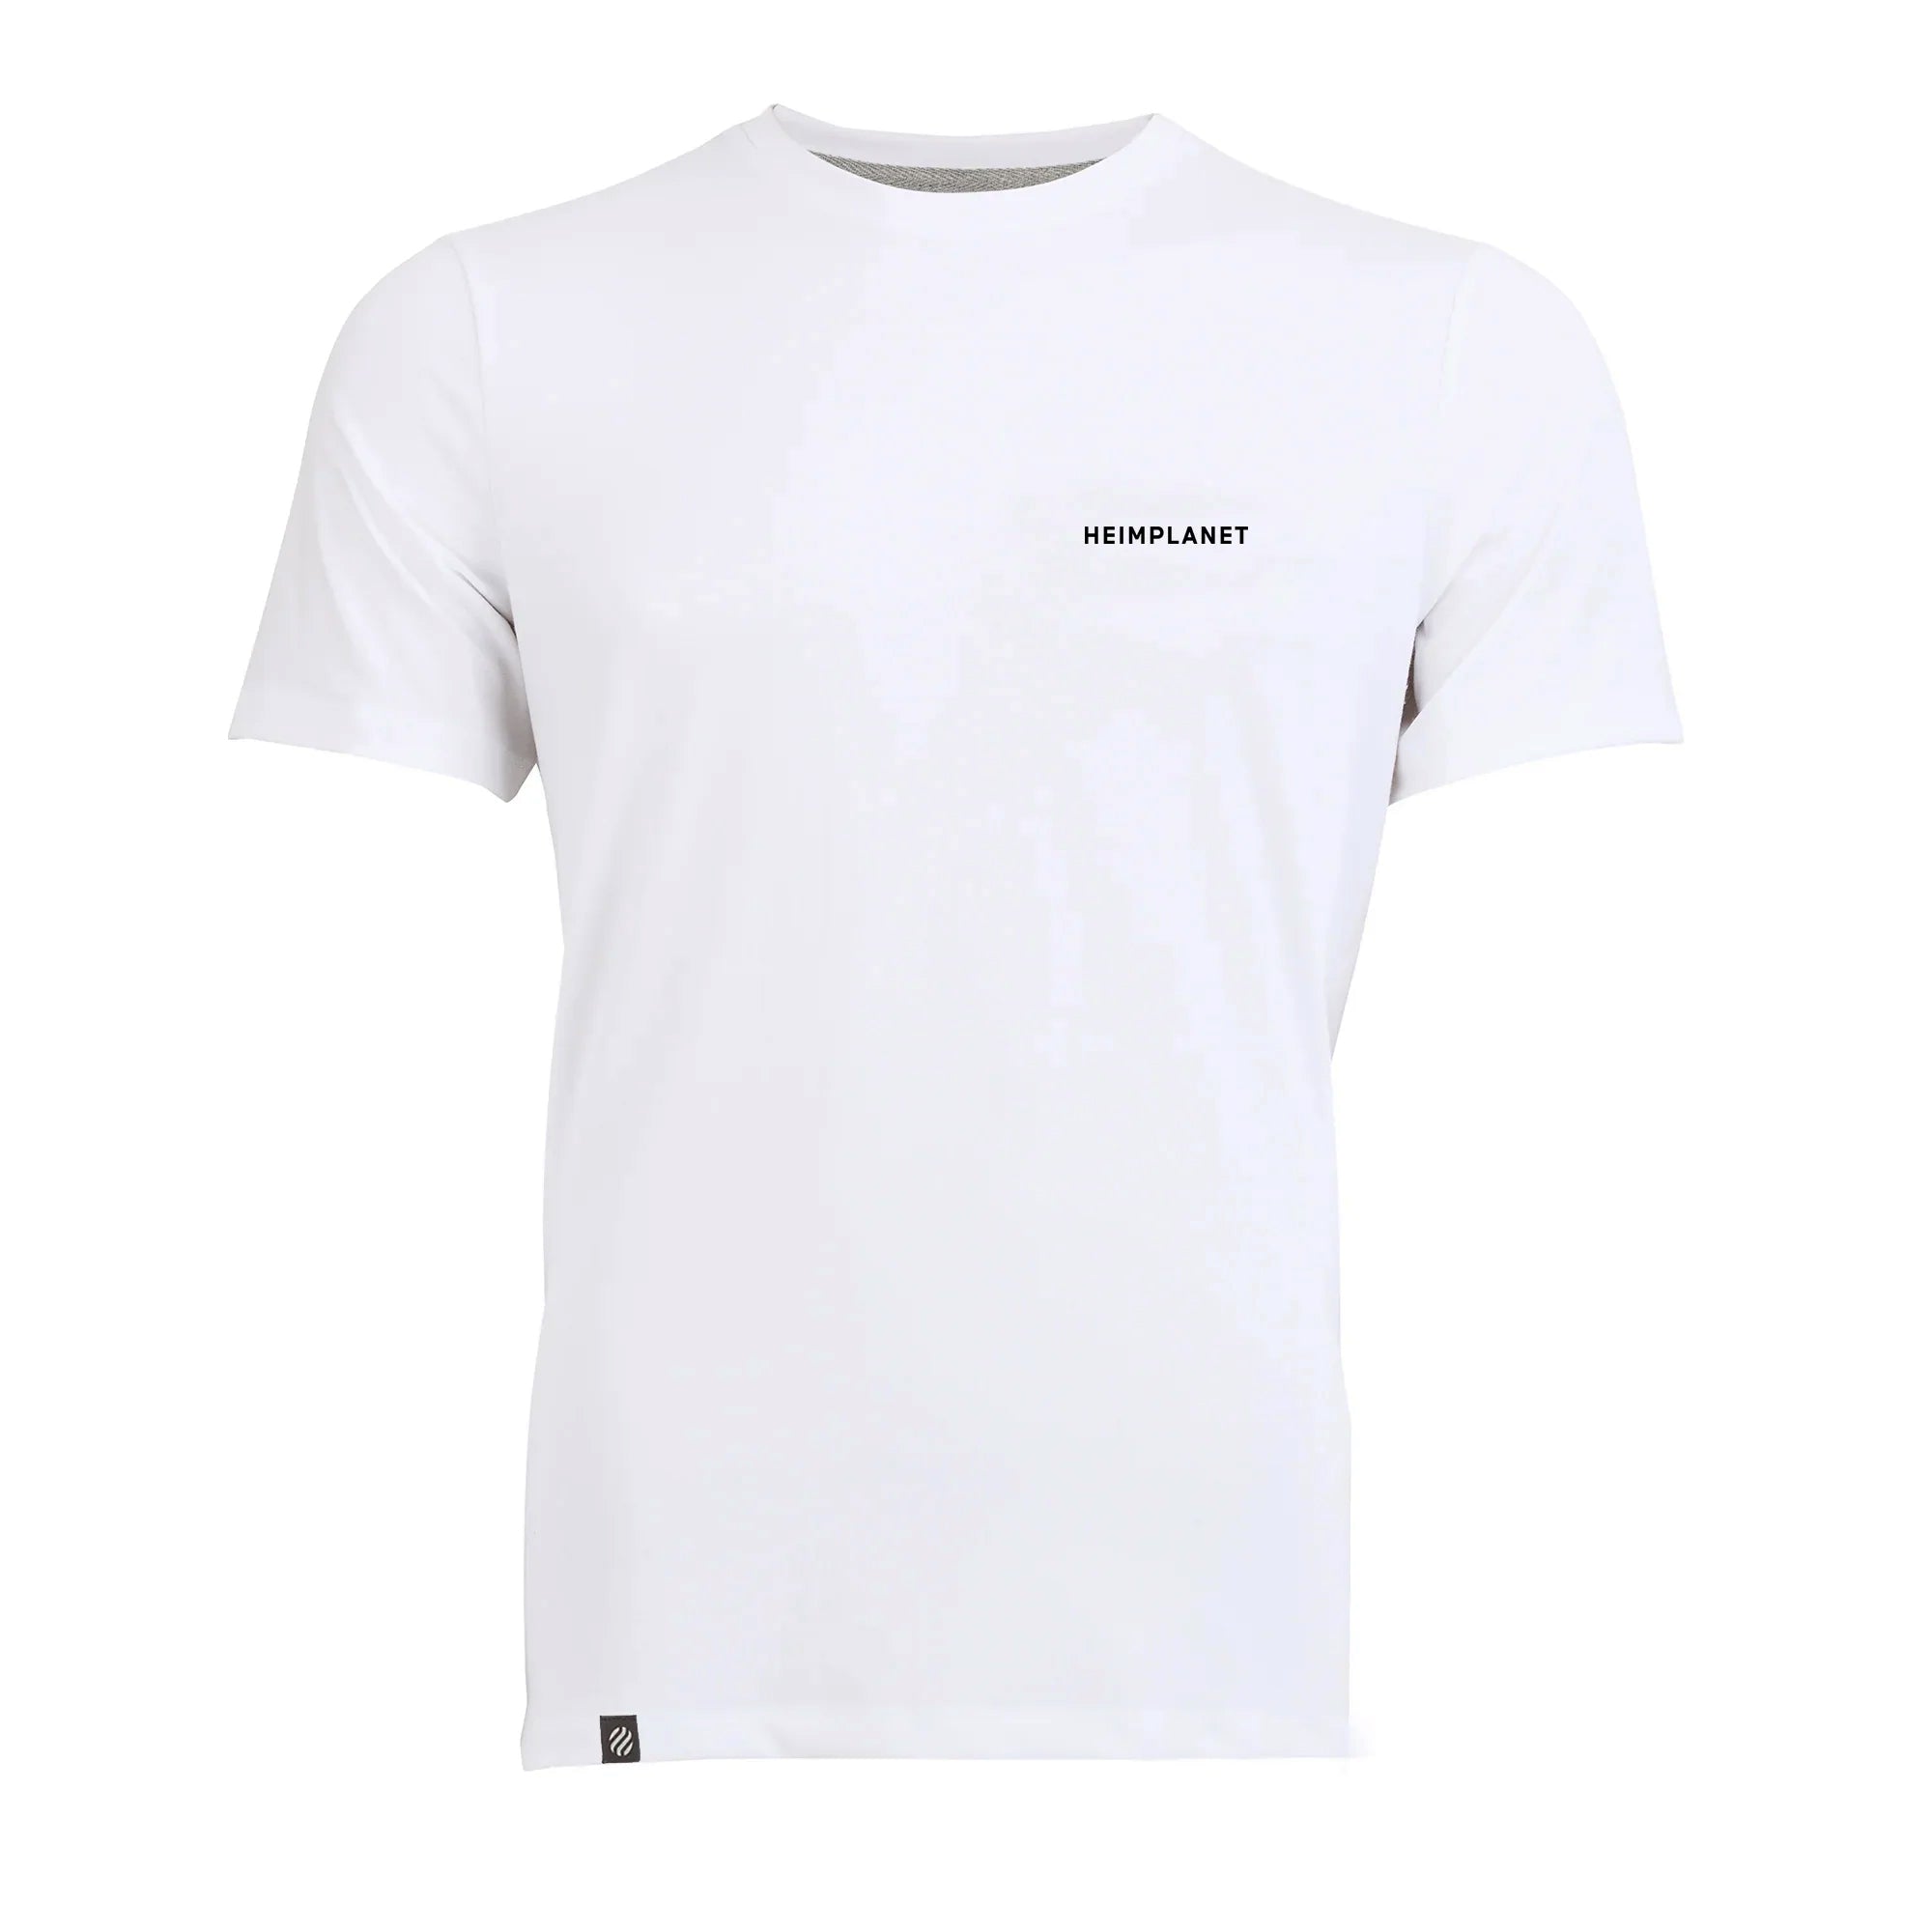 COOLEVER T-Shirt HPT x WEC, blanc